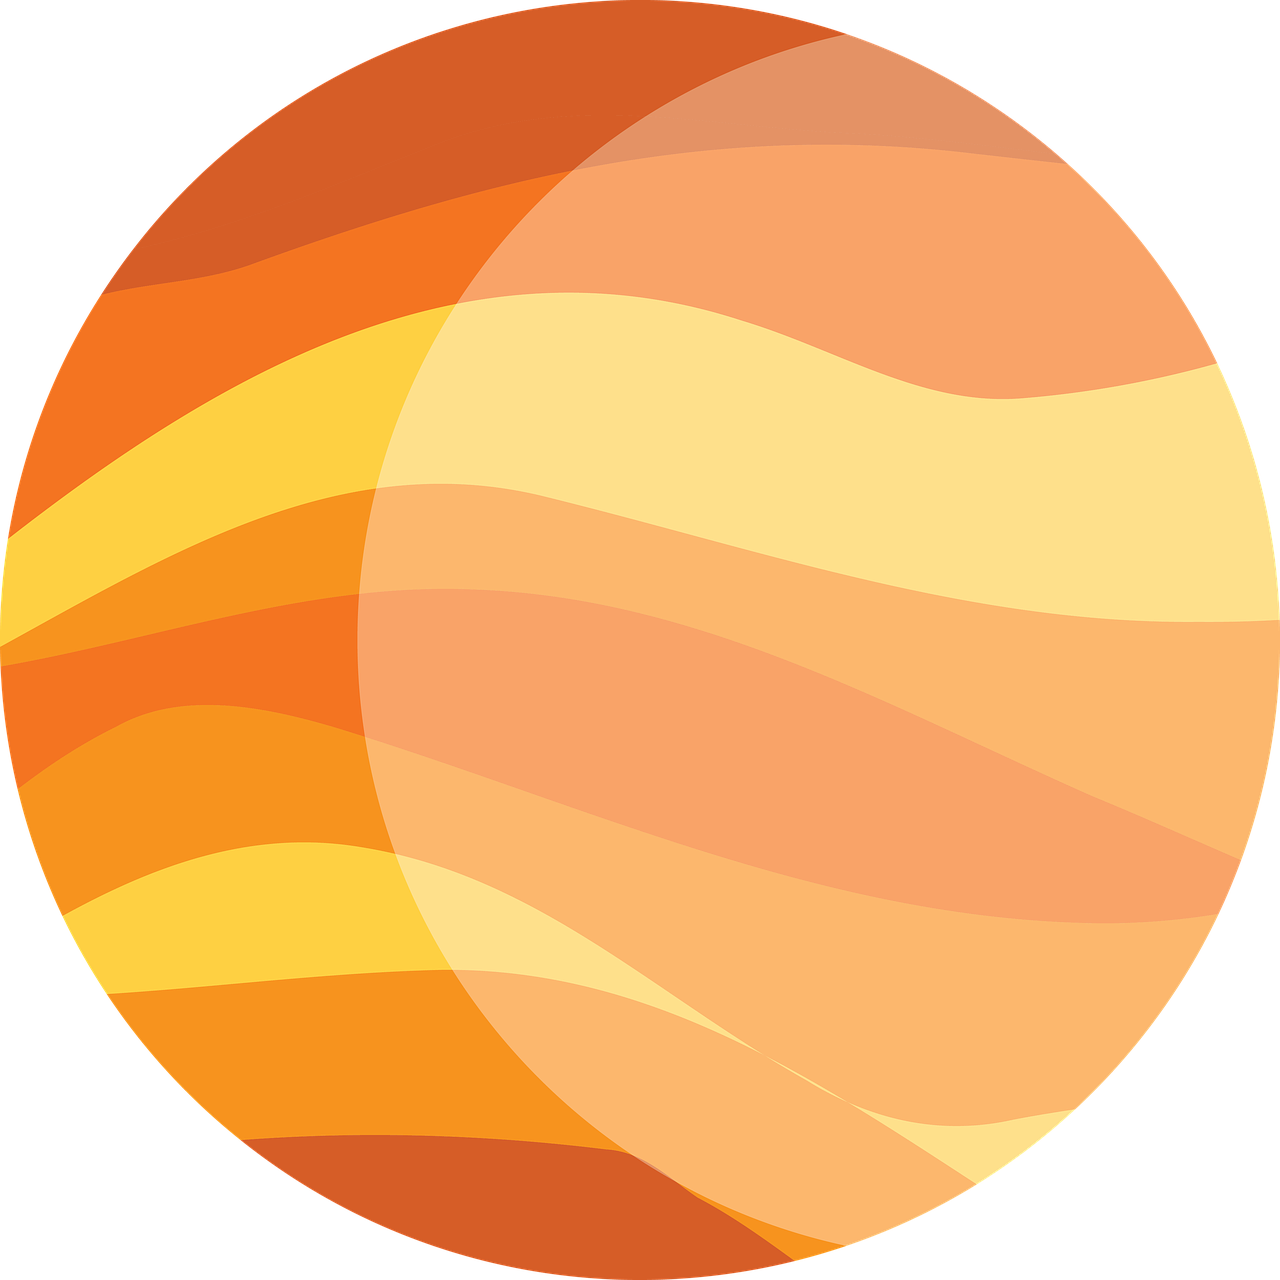 jupiter orange planet free photo